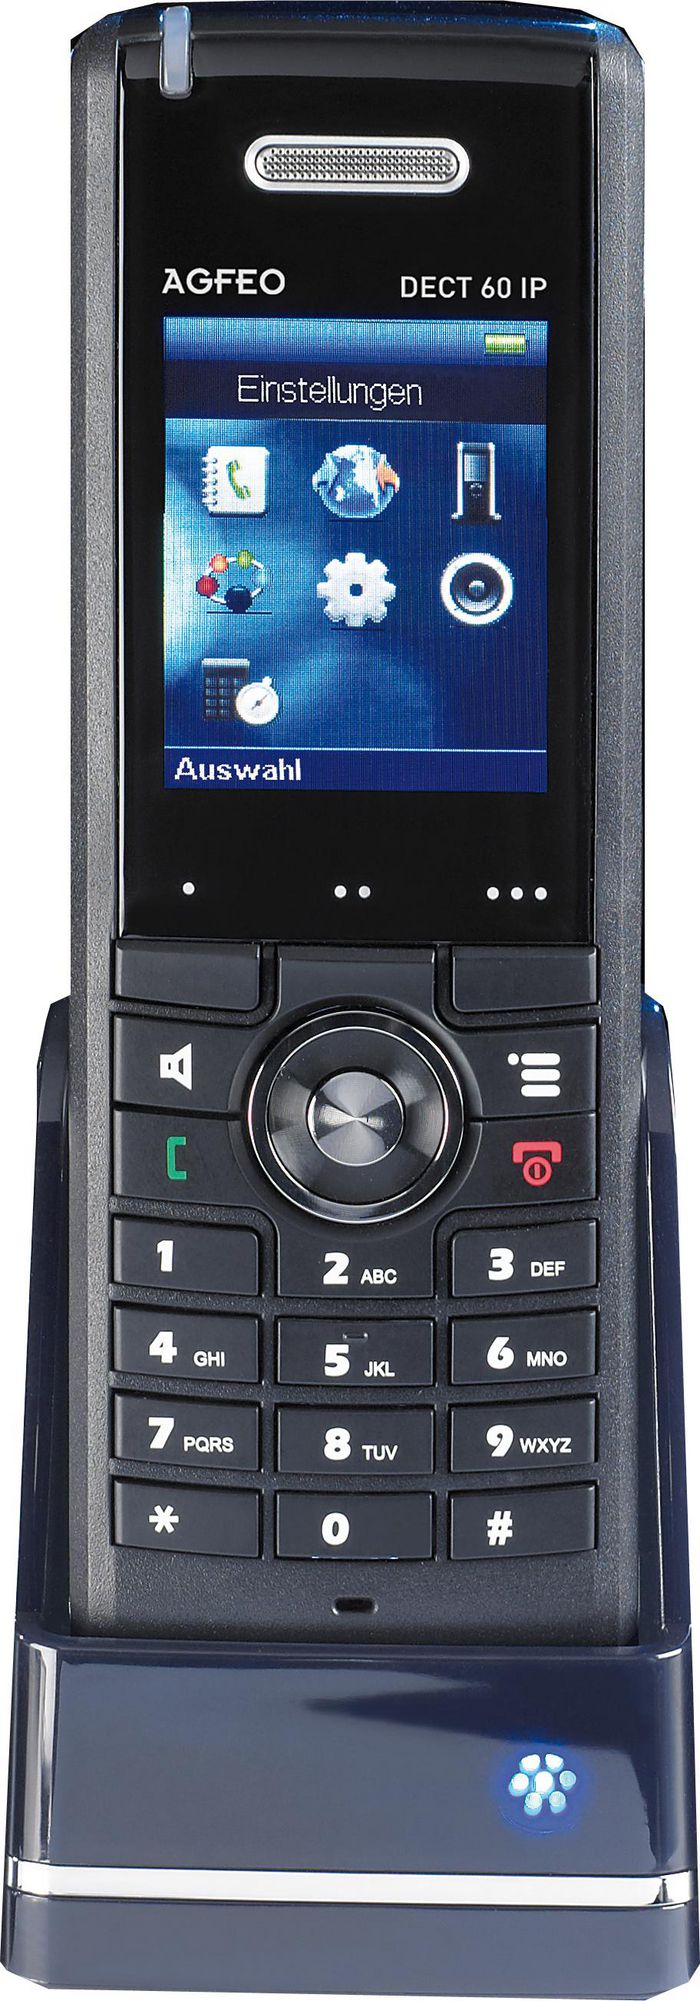 AGFEO Telefon DECT60 IP schwarz - W124727482